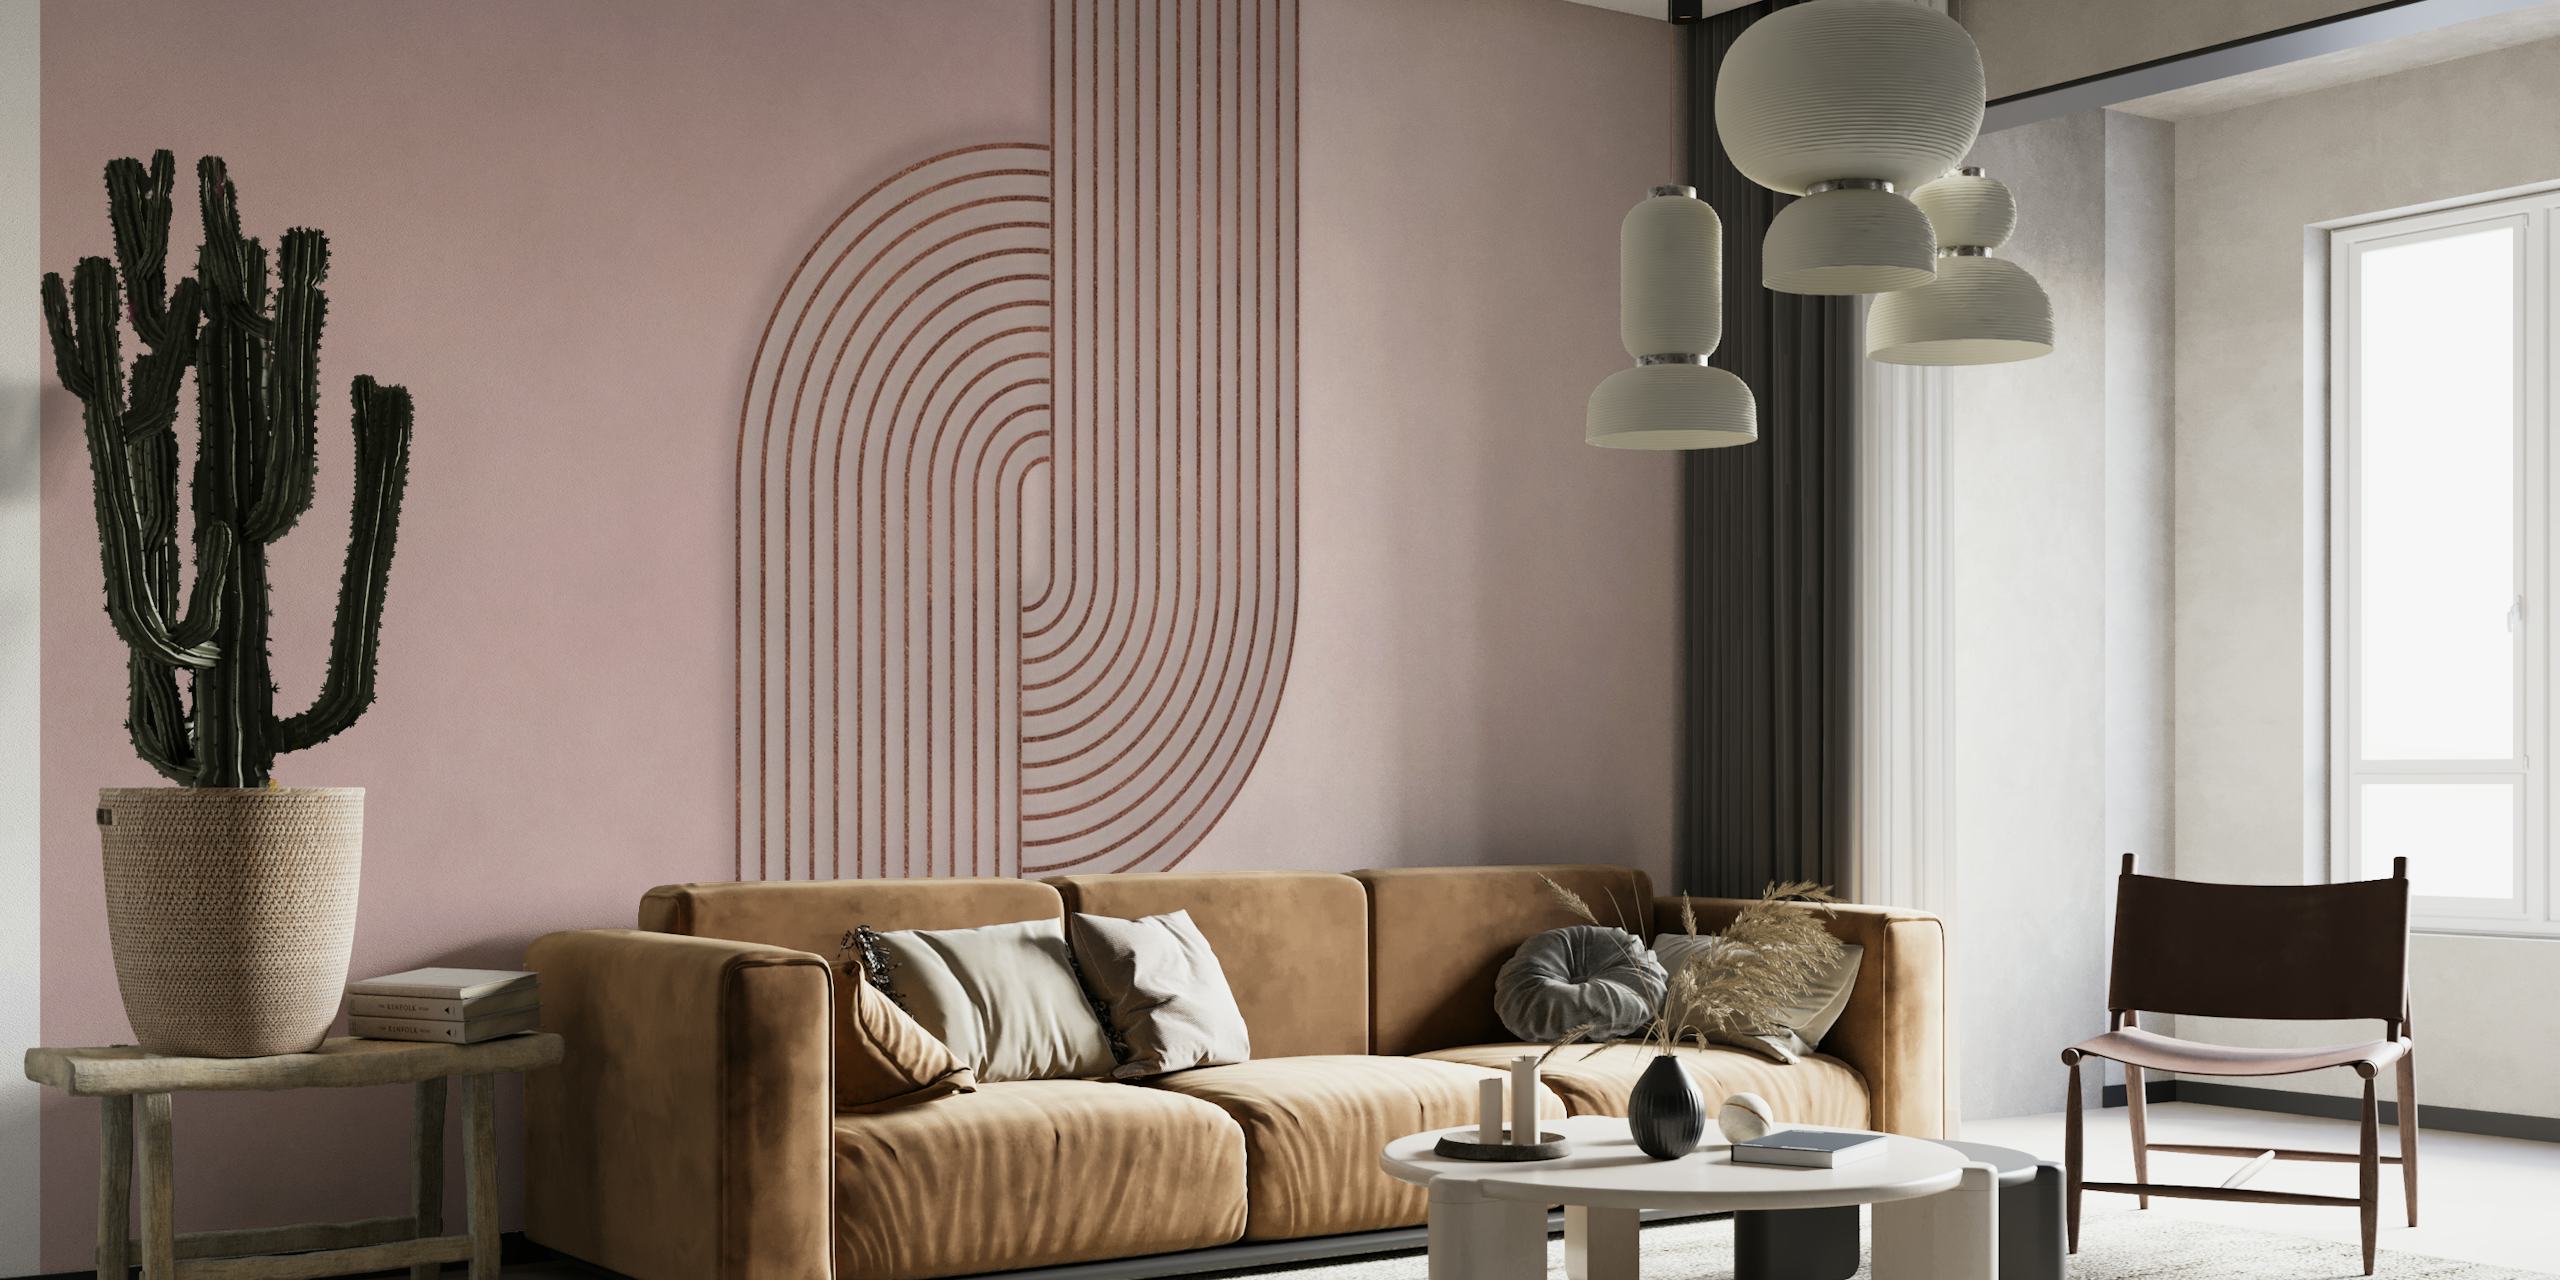 Bauhaus Twist Mid Century Modern Art Rosegold Blush Pink tapete